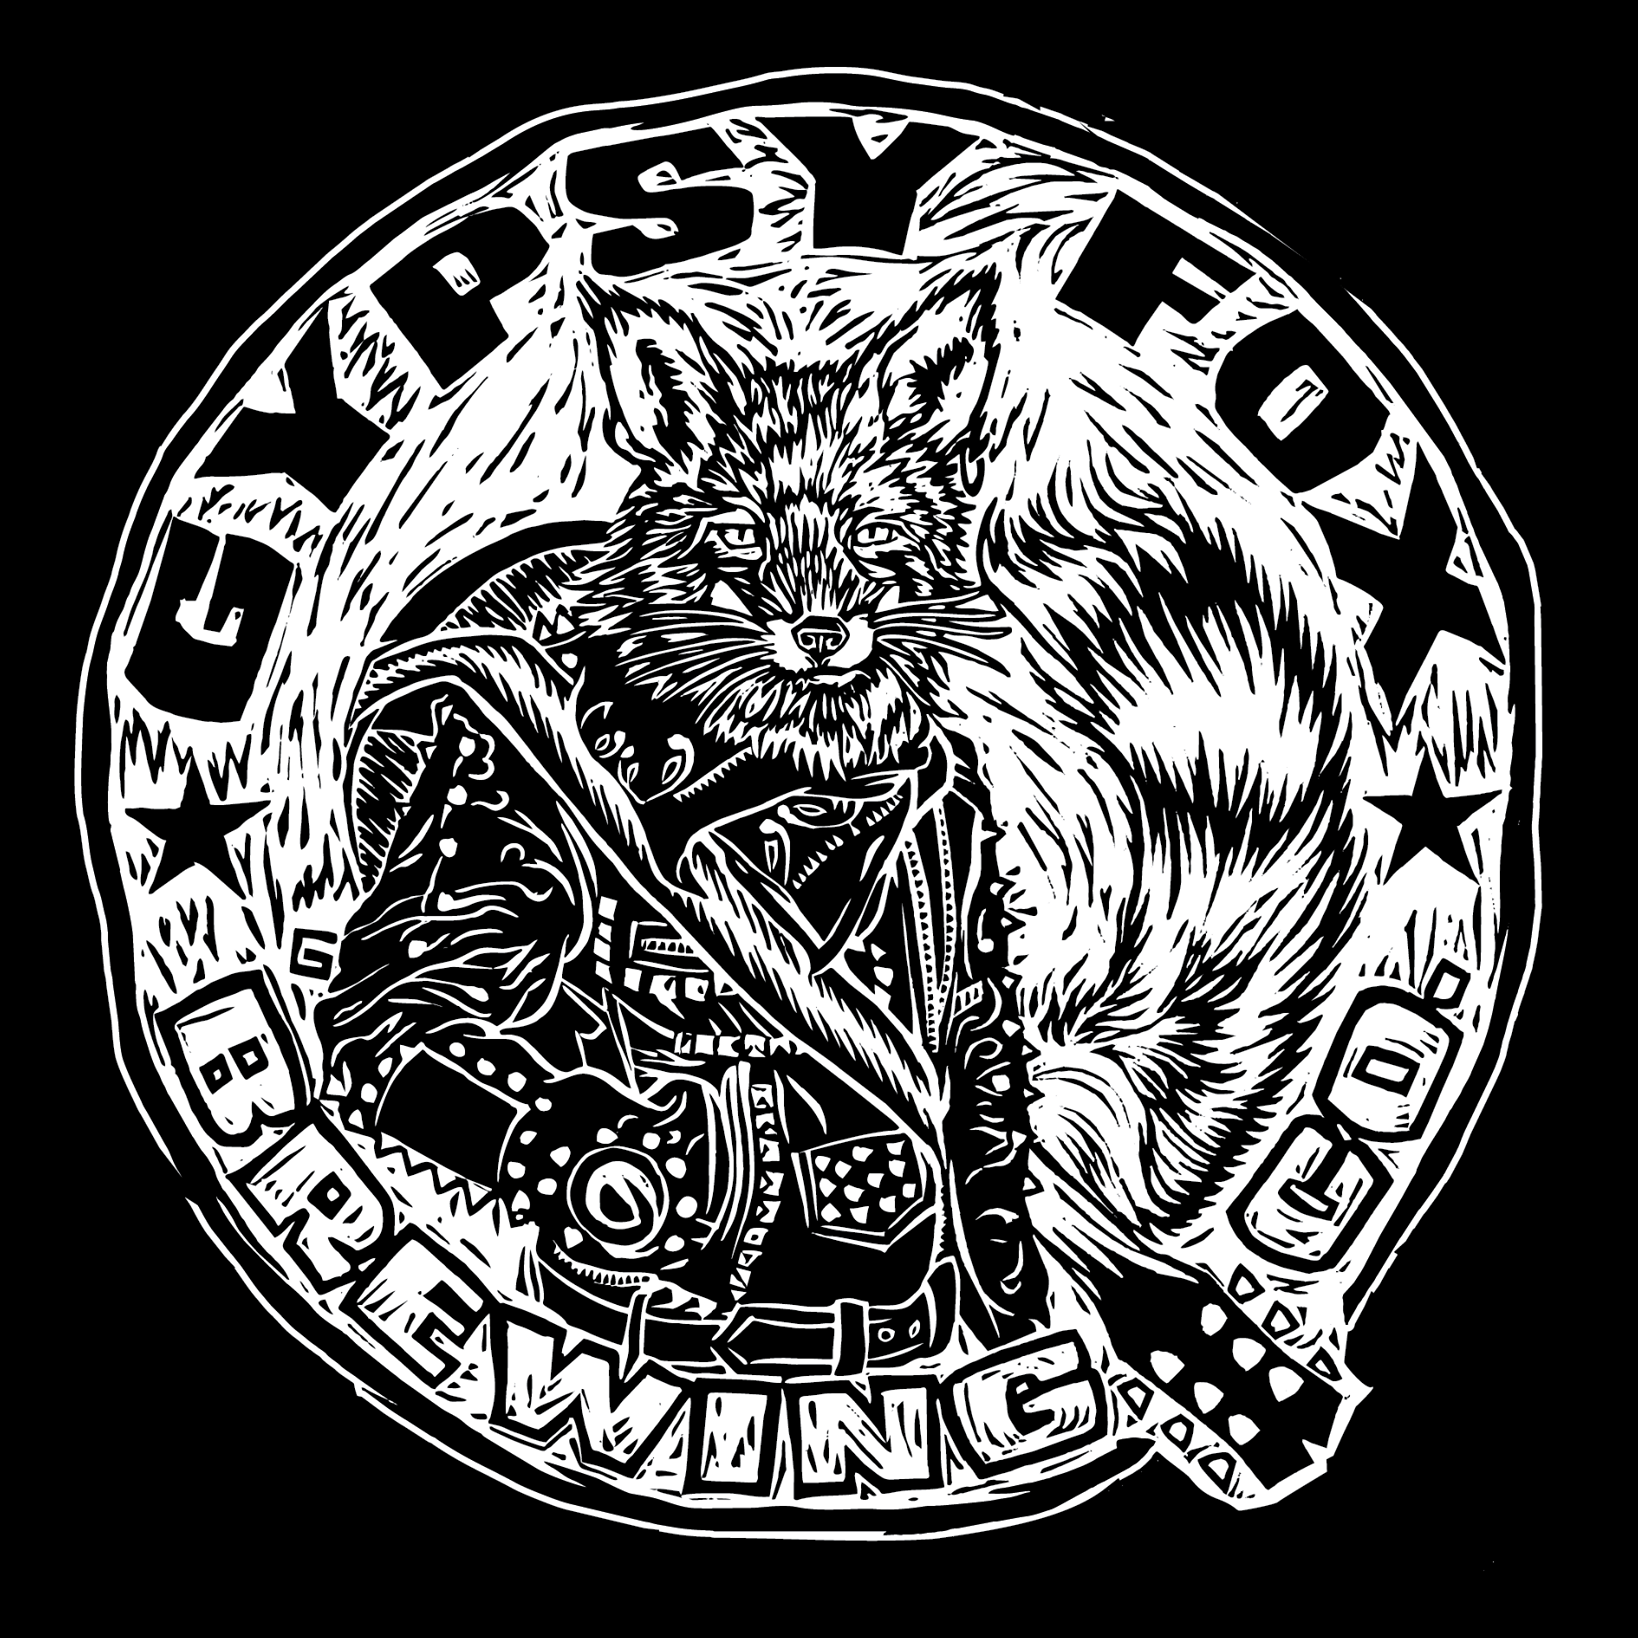 Gypsy Fox Brewing Co